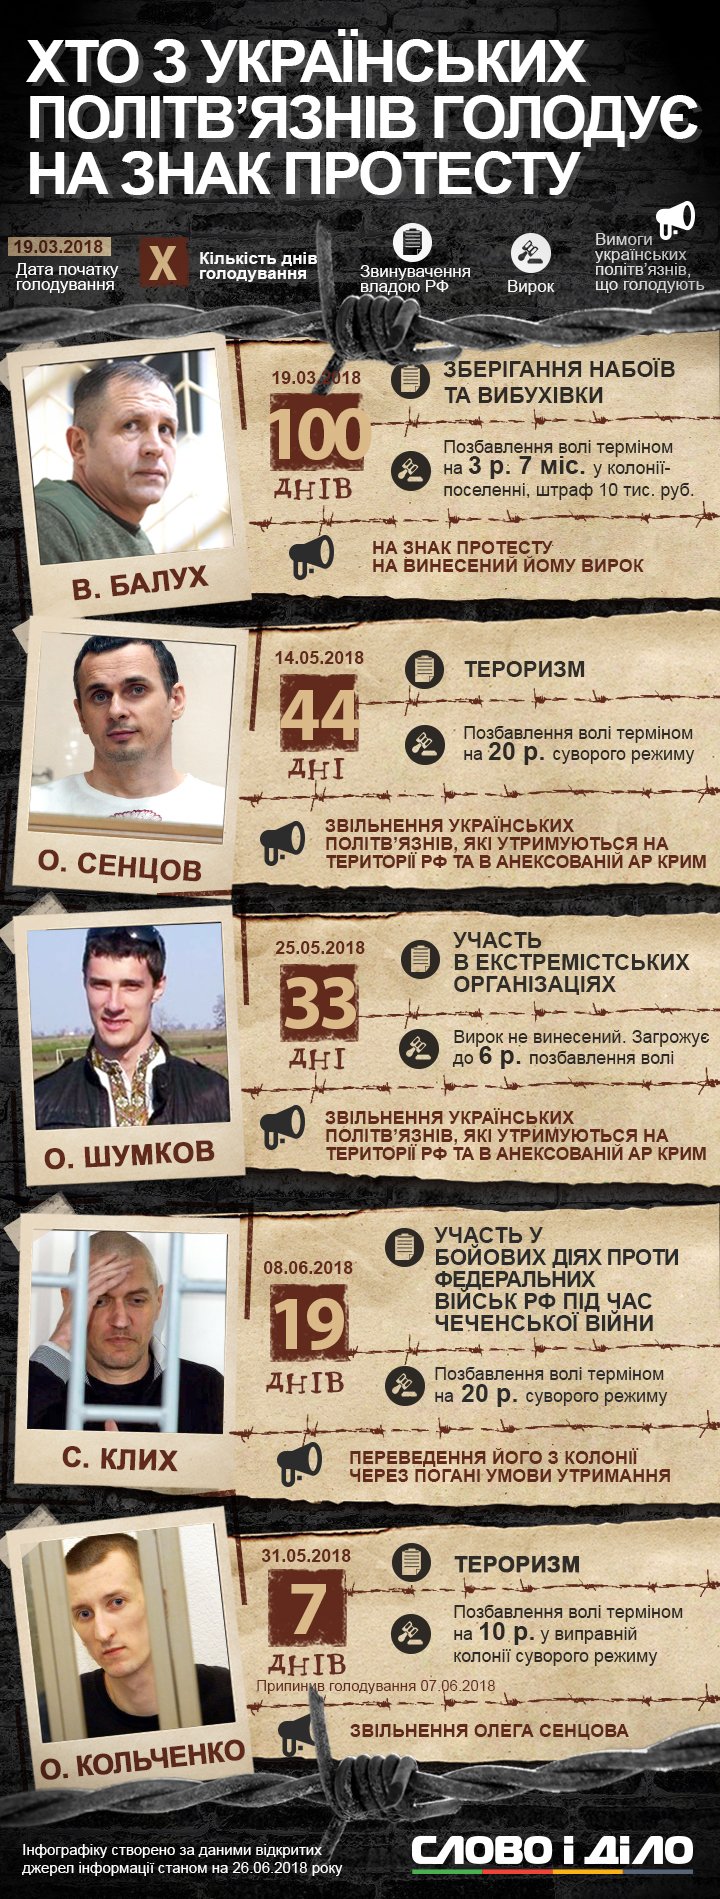 Четверо украинцев, незаконно удерживаемых в России, сейчас продолжают голодовку. Ранее неделю голодал Александр Кольченко.